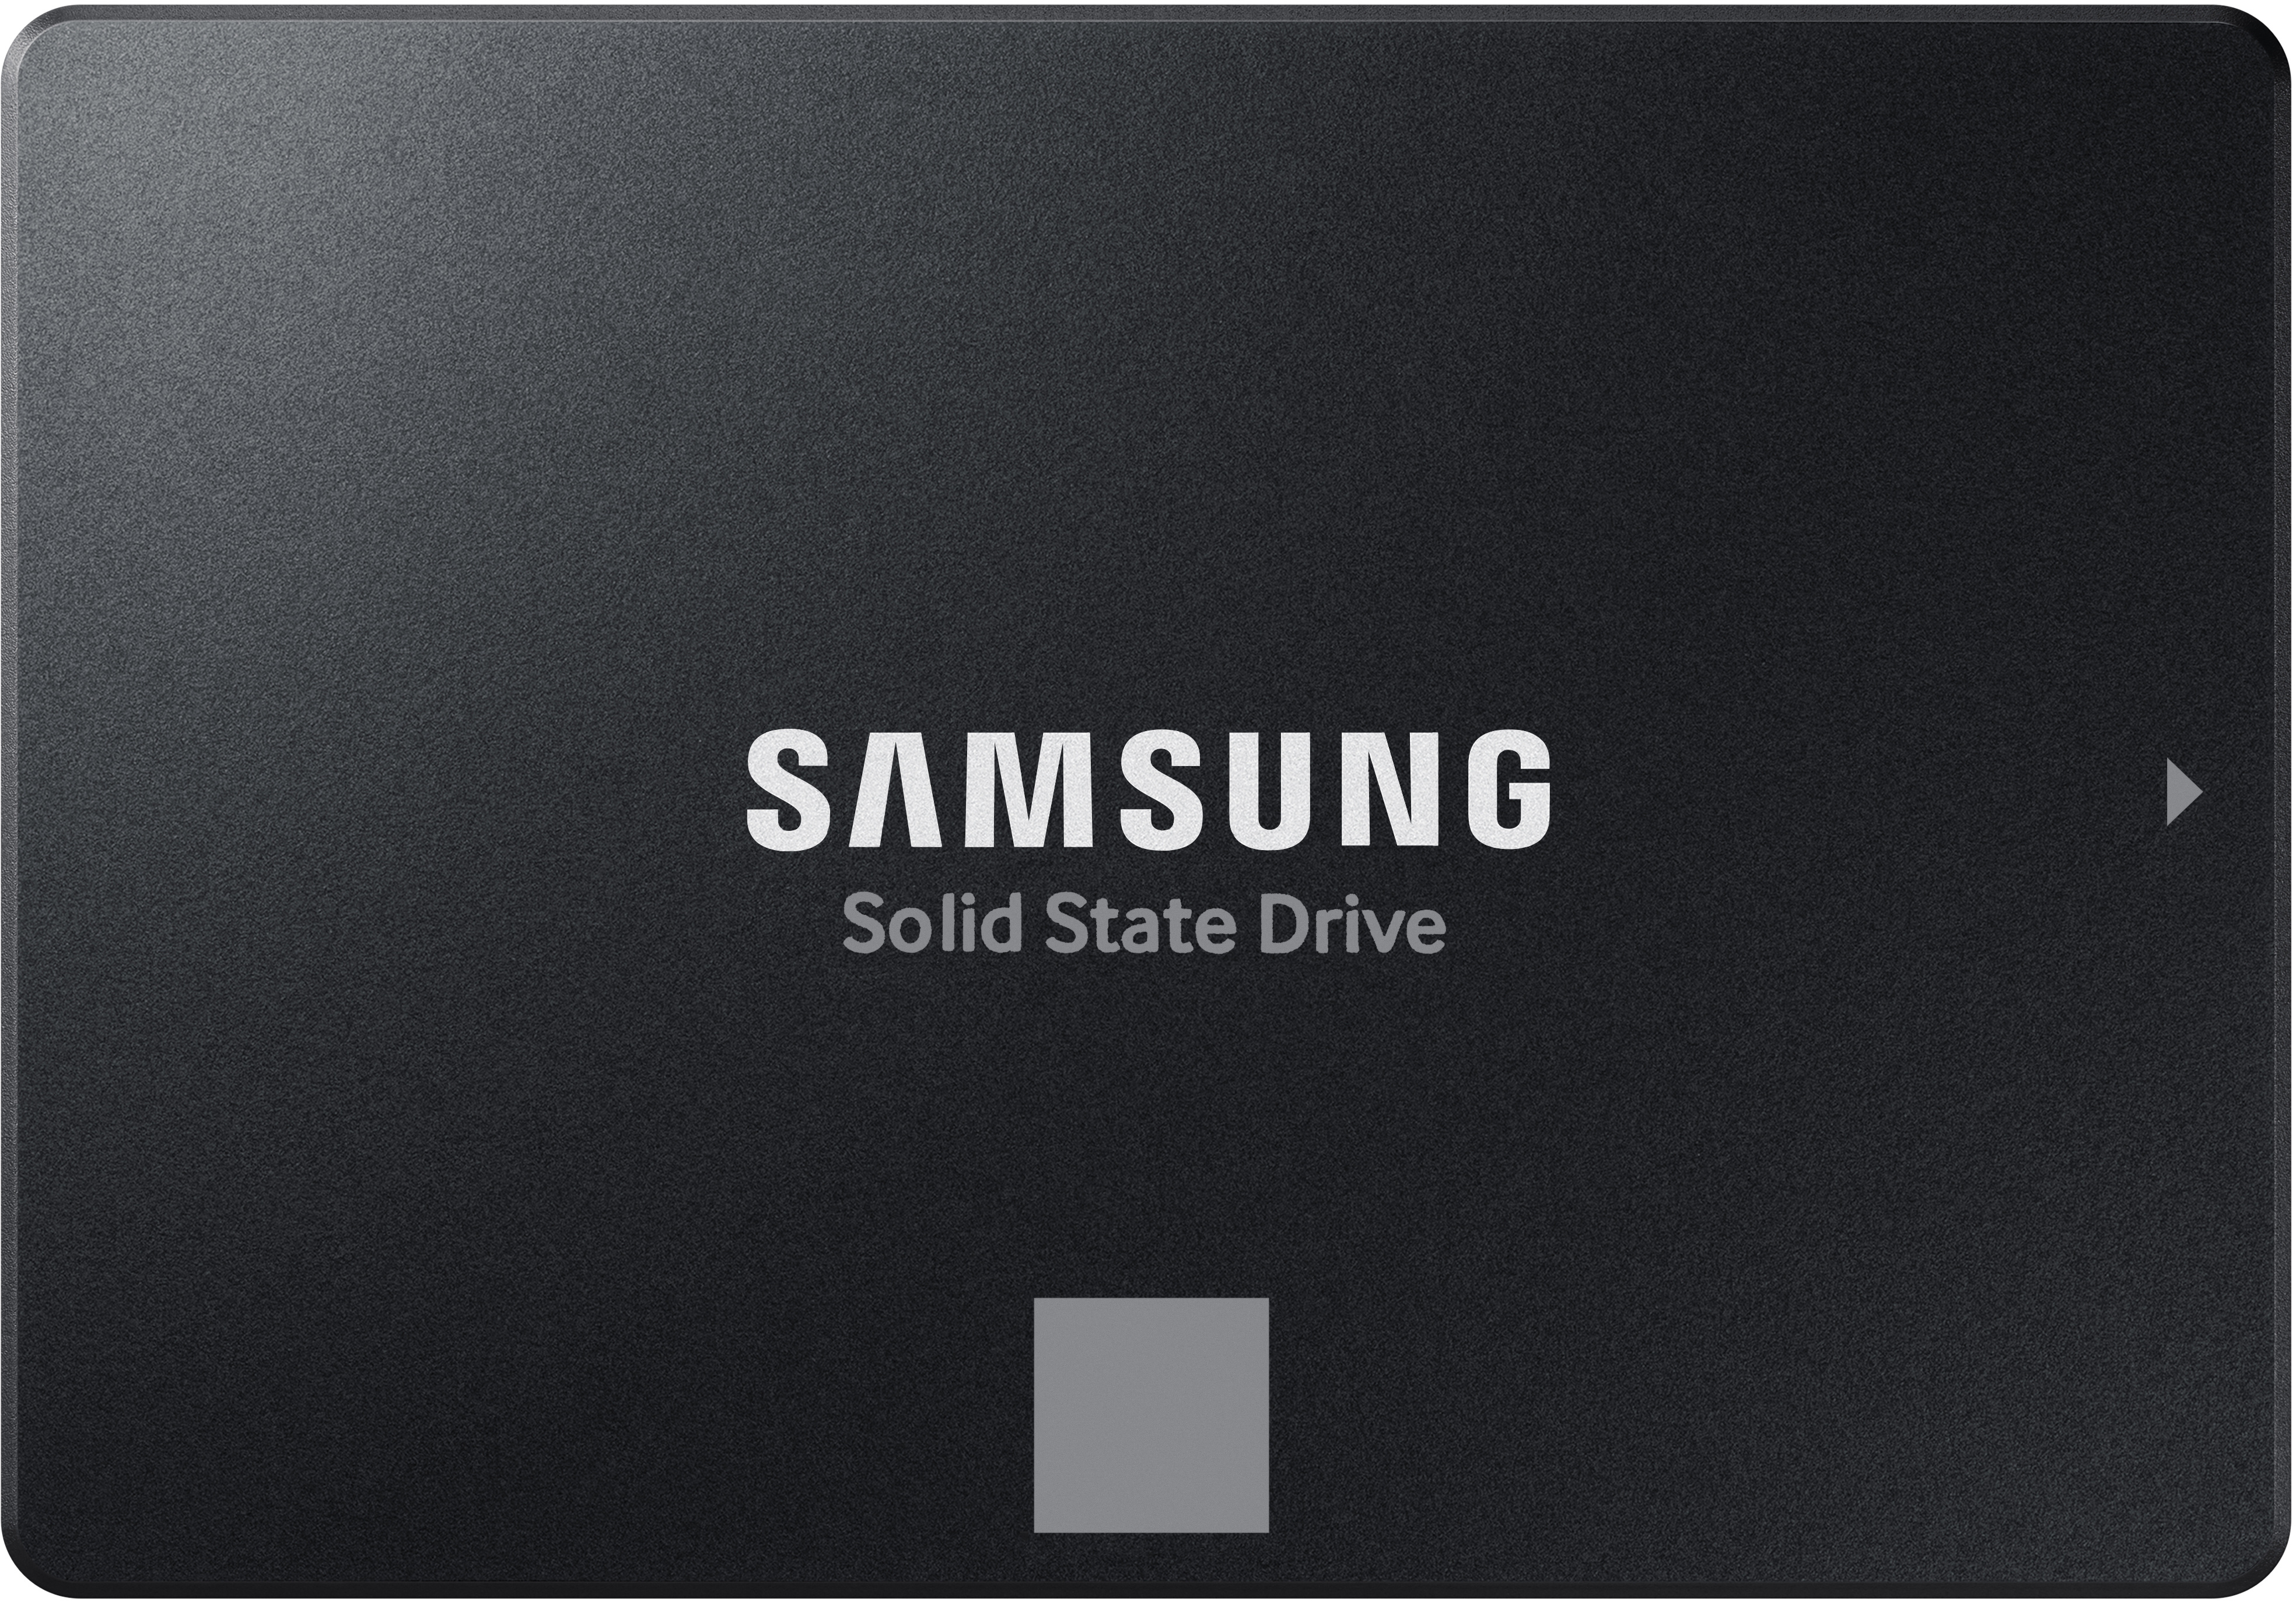 SAMSUNG MEMORY SSD 870 Evo Series 2TB MZ-77E2T0B/EU SATA III 2.5 V-NAND Basic